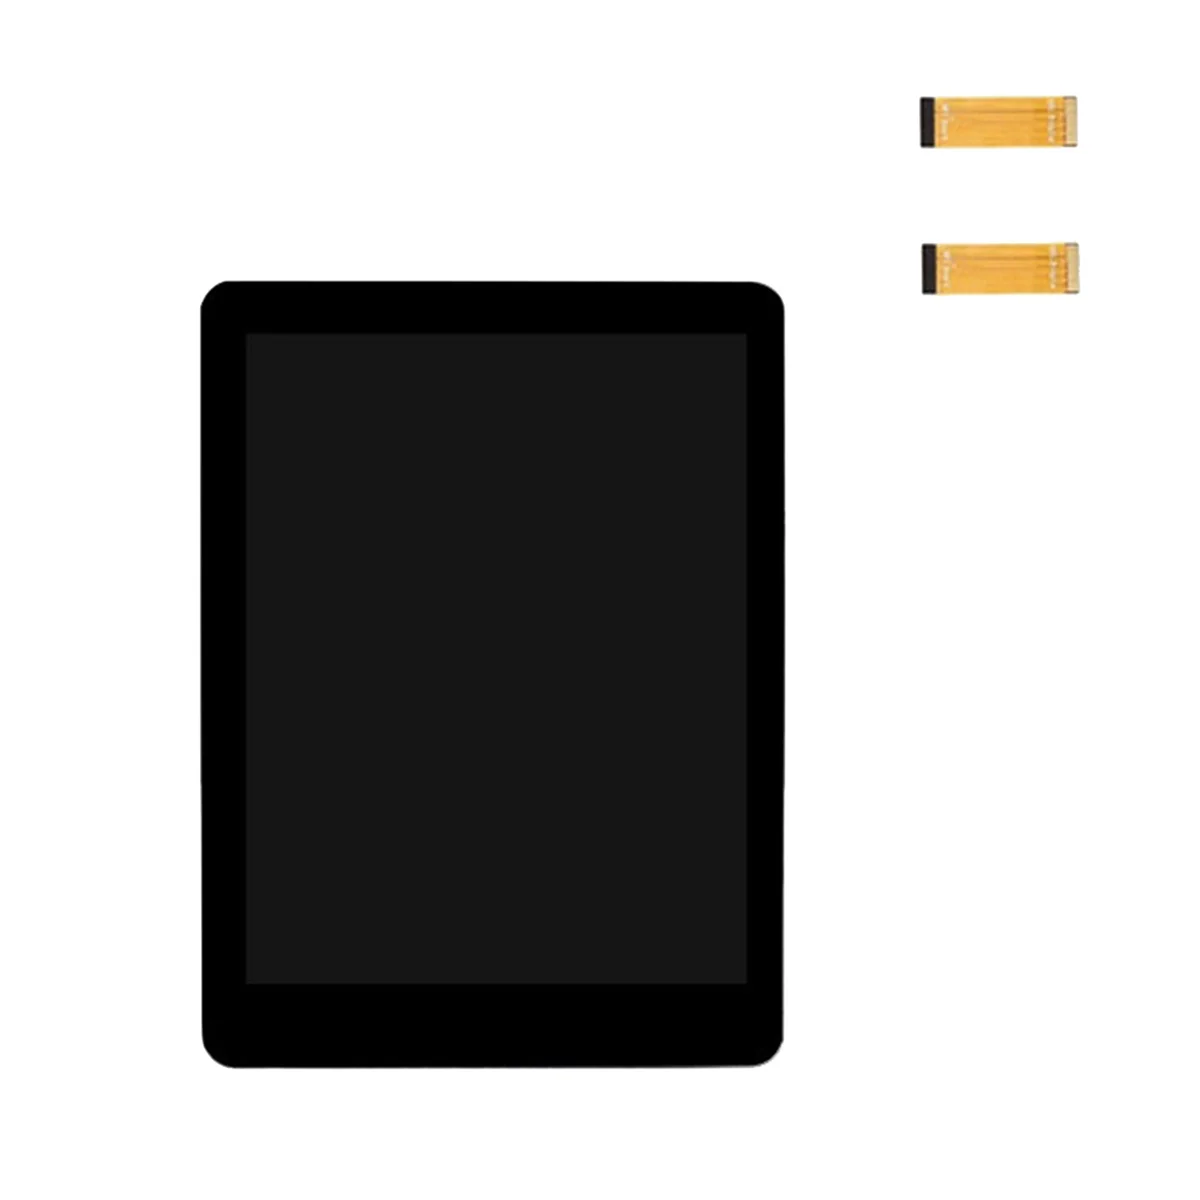 Mini Ekran Ips Tam Donanımlı 480X640 Piksel 2.8 İnç Kapasitif Dokunmatik Ekran Modülü